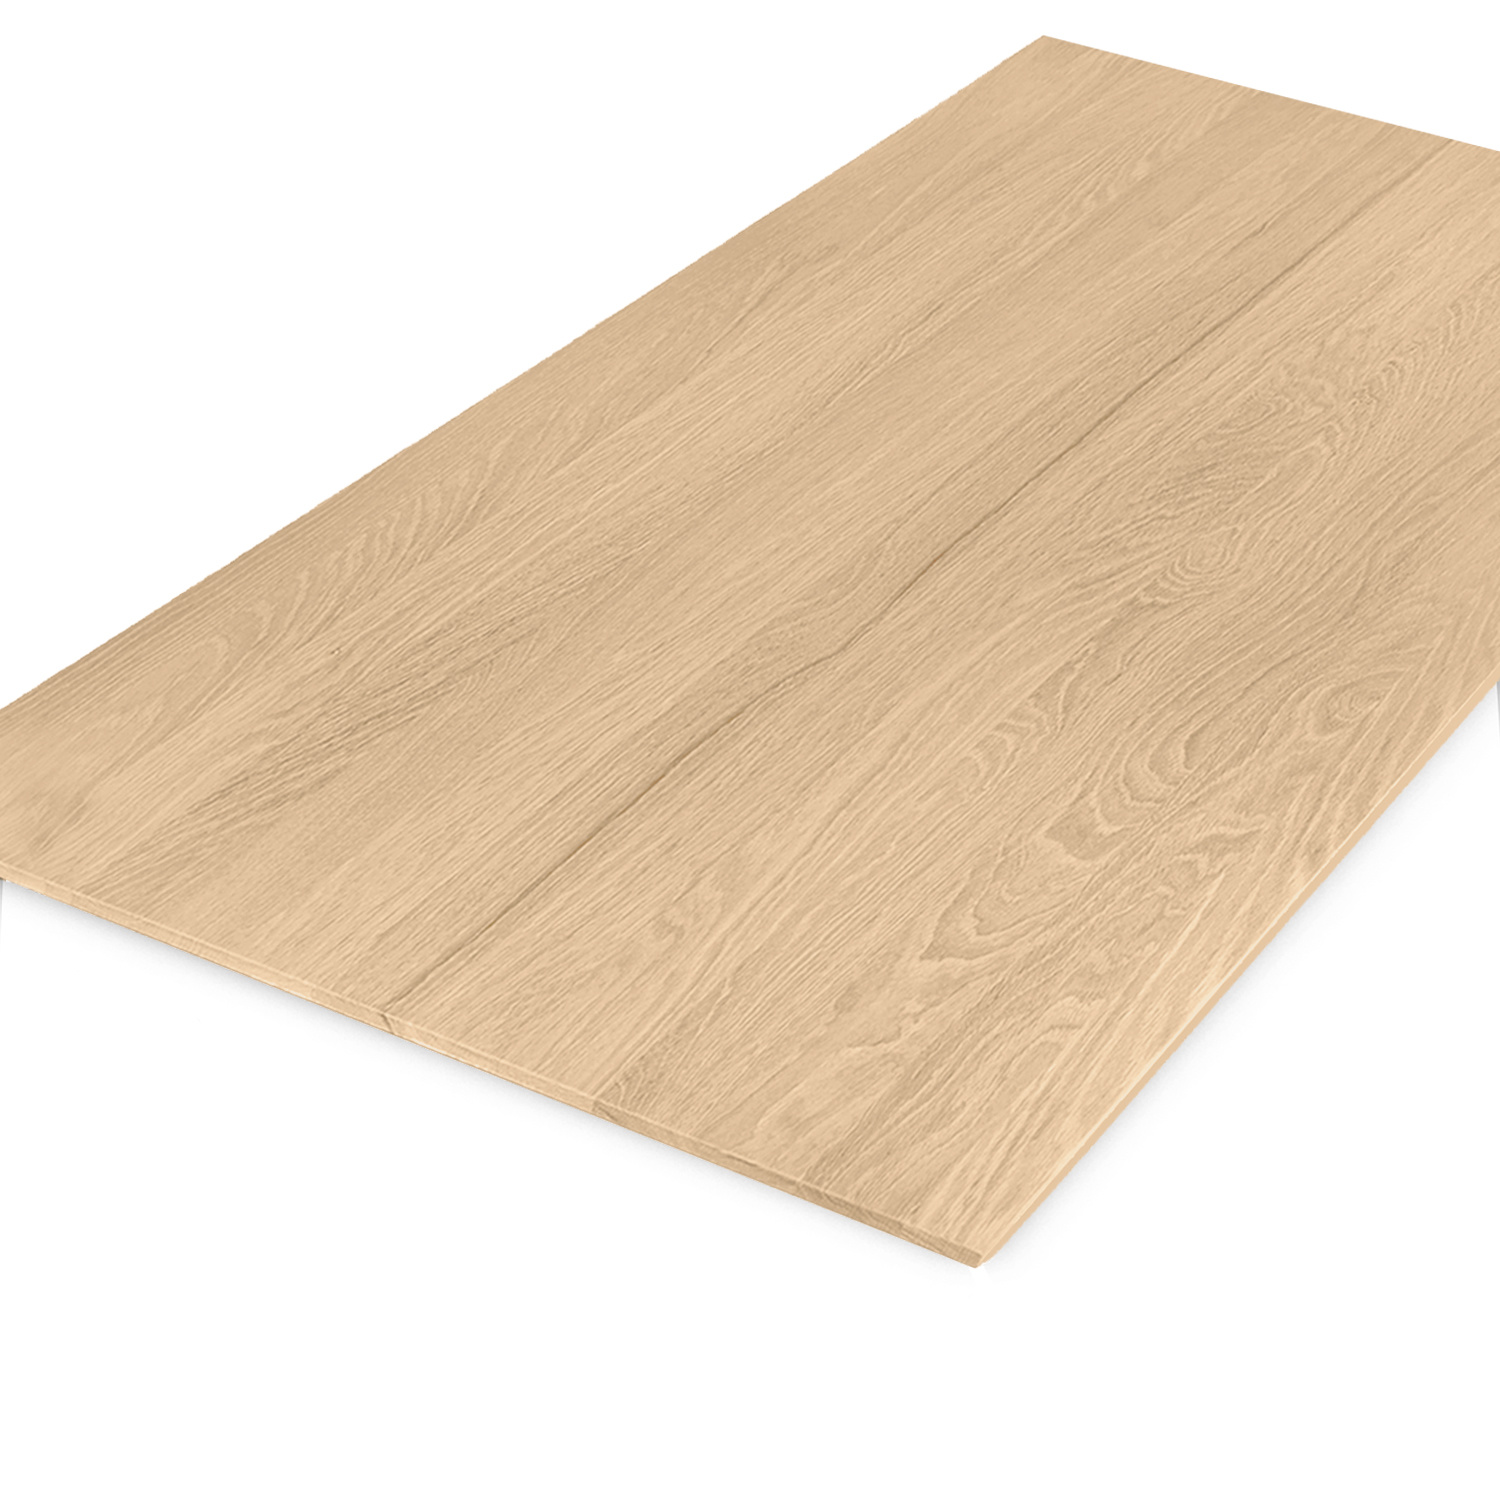  Tischplatte Eiche - Schweizer Kante - nach Maß - 4 cm dick (2-lagig) - Eichenholz A-Qualität - Eiche Tischplatte massiv - verleimt & künstlich getrocknet (HF 8-12%) - 50-120x50-350 cm